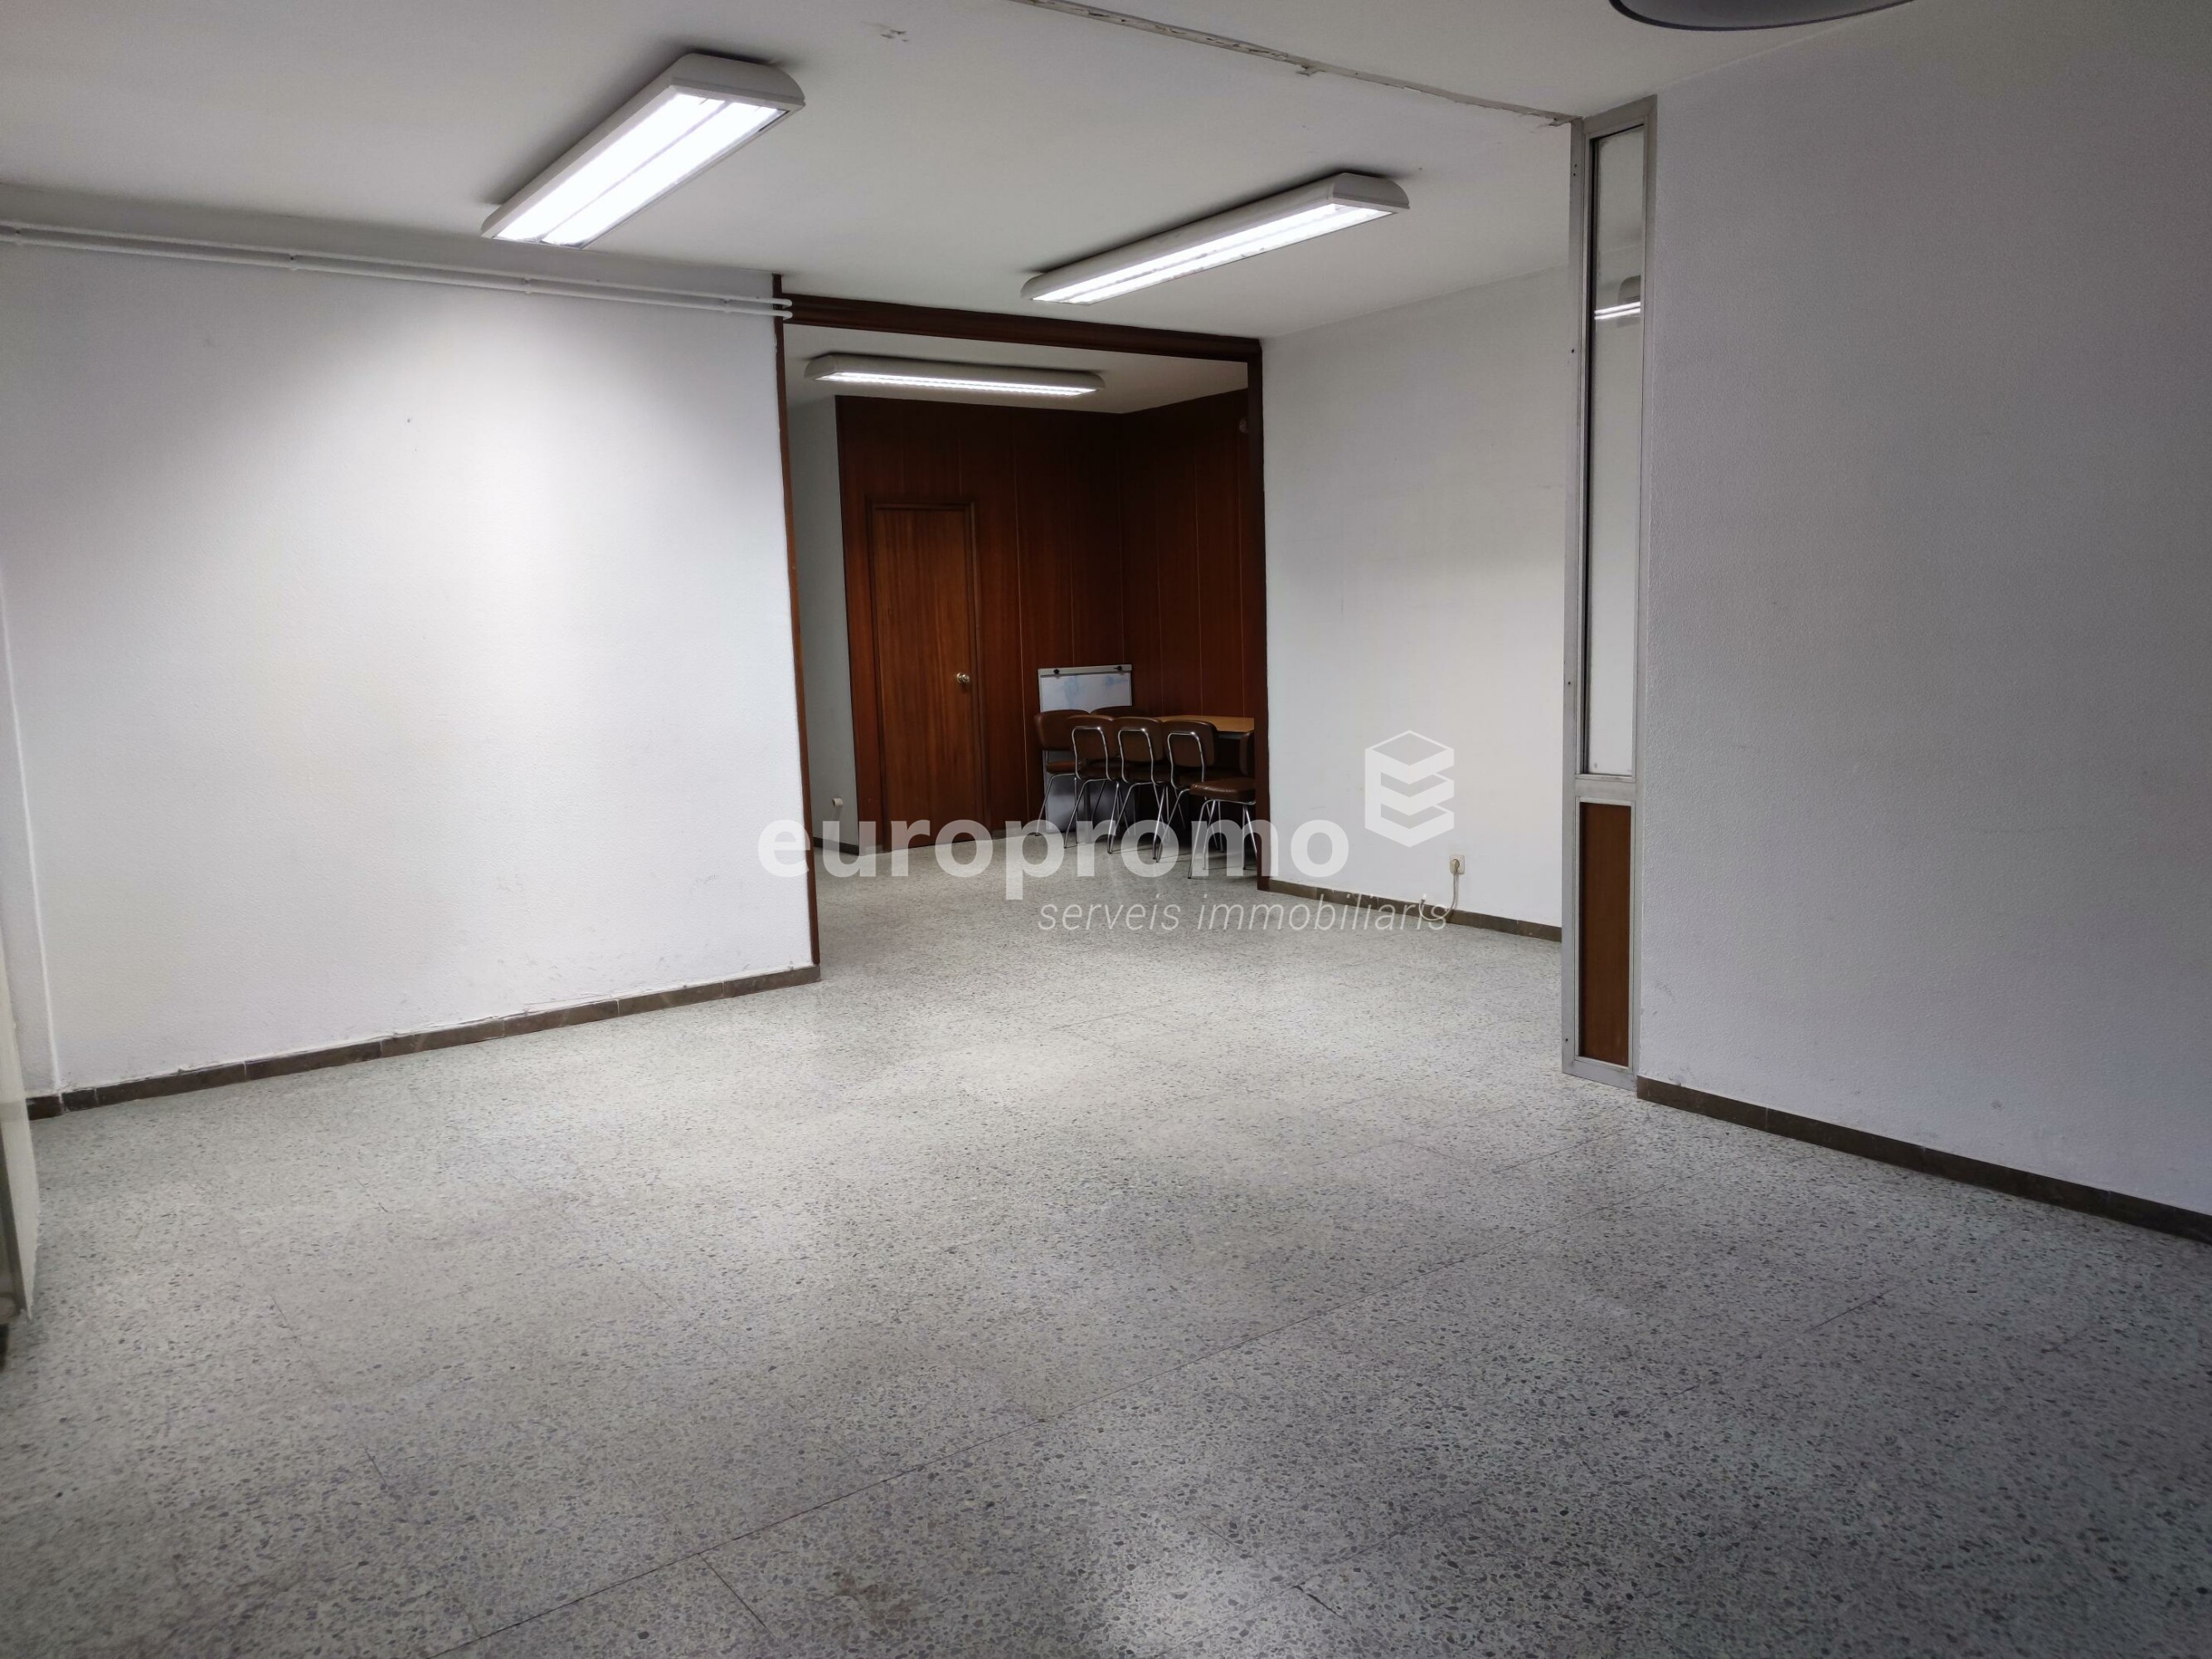 Oficina de 60 m2 en el centre de Girona- Jaume I